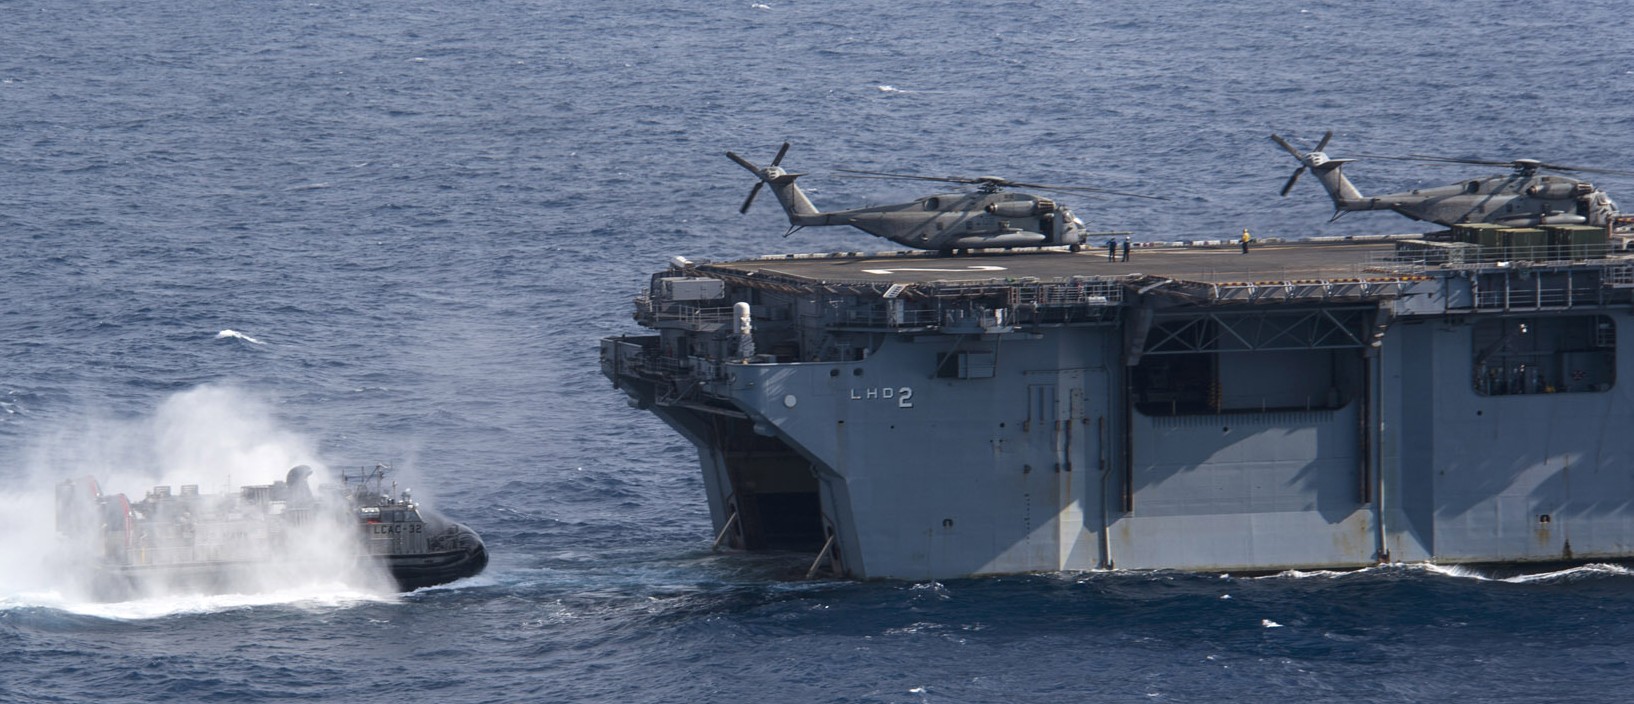 lhd-2 uss essex wasp class amphibious assault ship landing helicopter us navy rimpac 2012 110